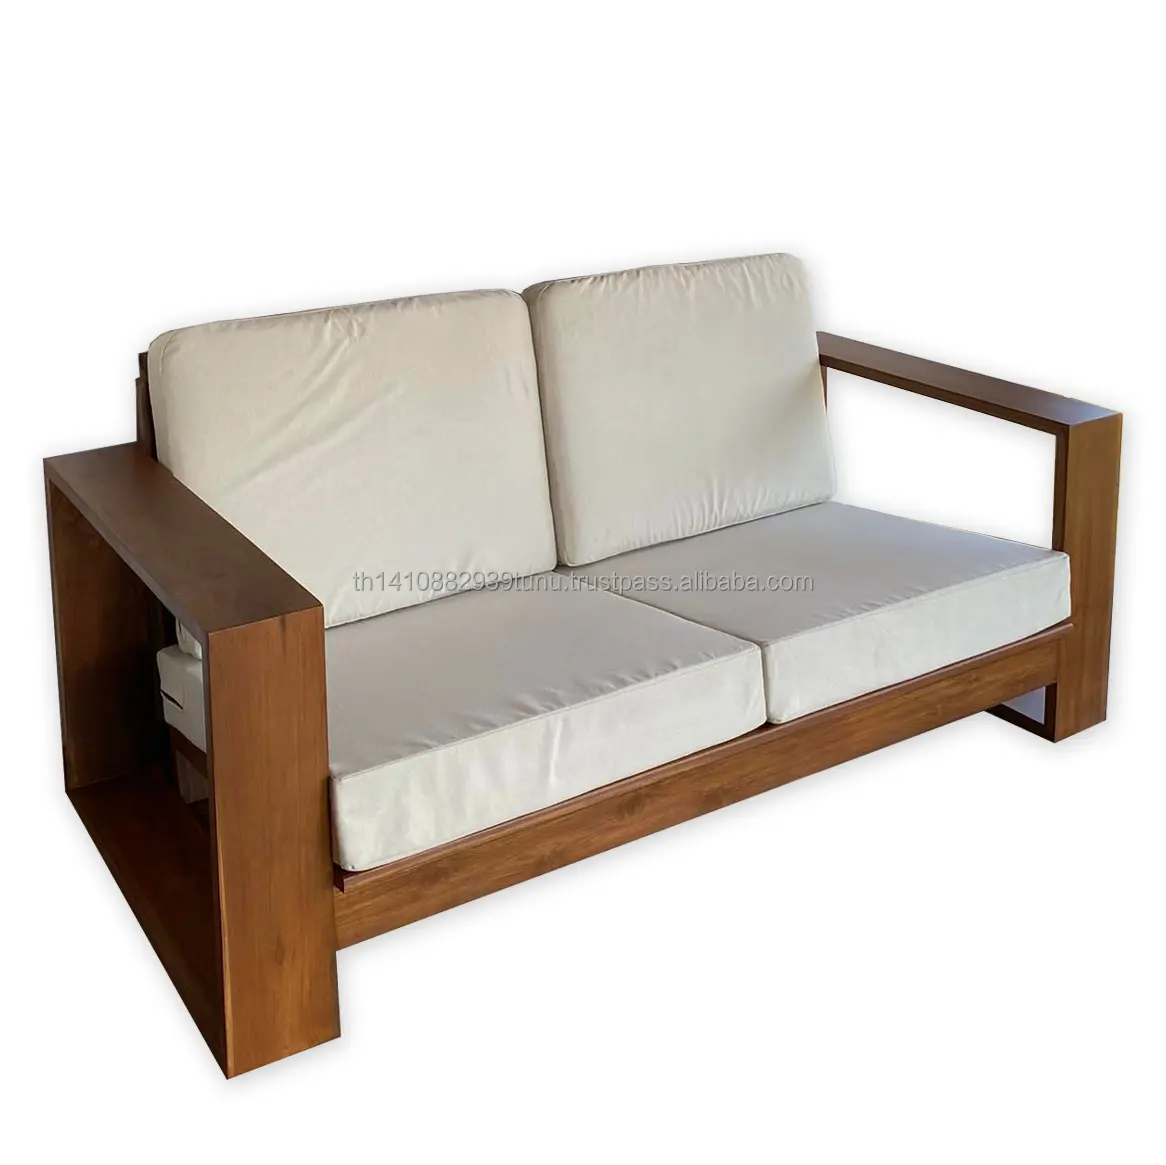 Hochwertiges modernes Design Sofa rahmen aus massivem Teakholz mit Baumwoll-Canvas-Bezug Gemütliche minimale Wohn möbel